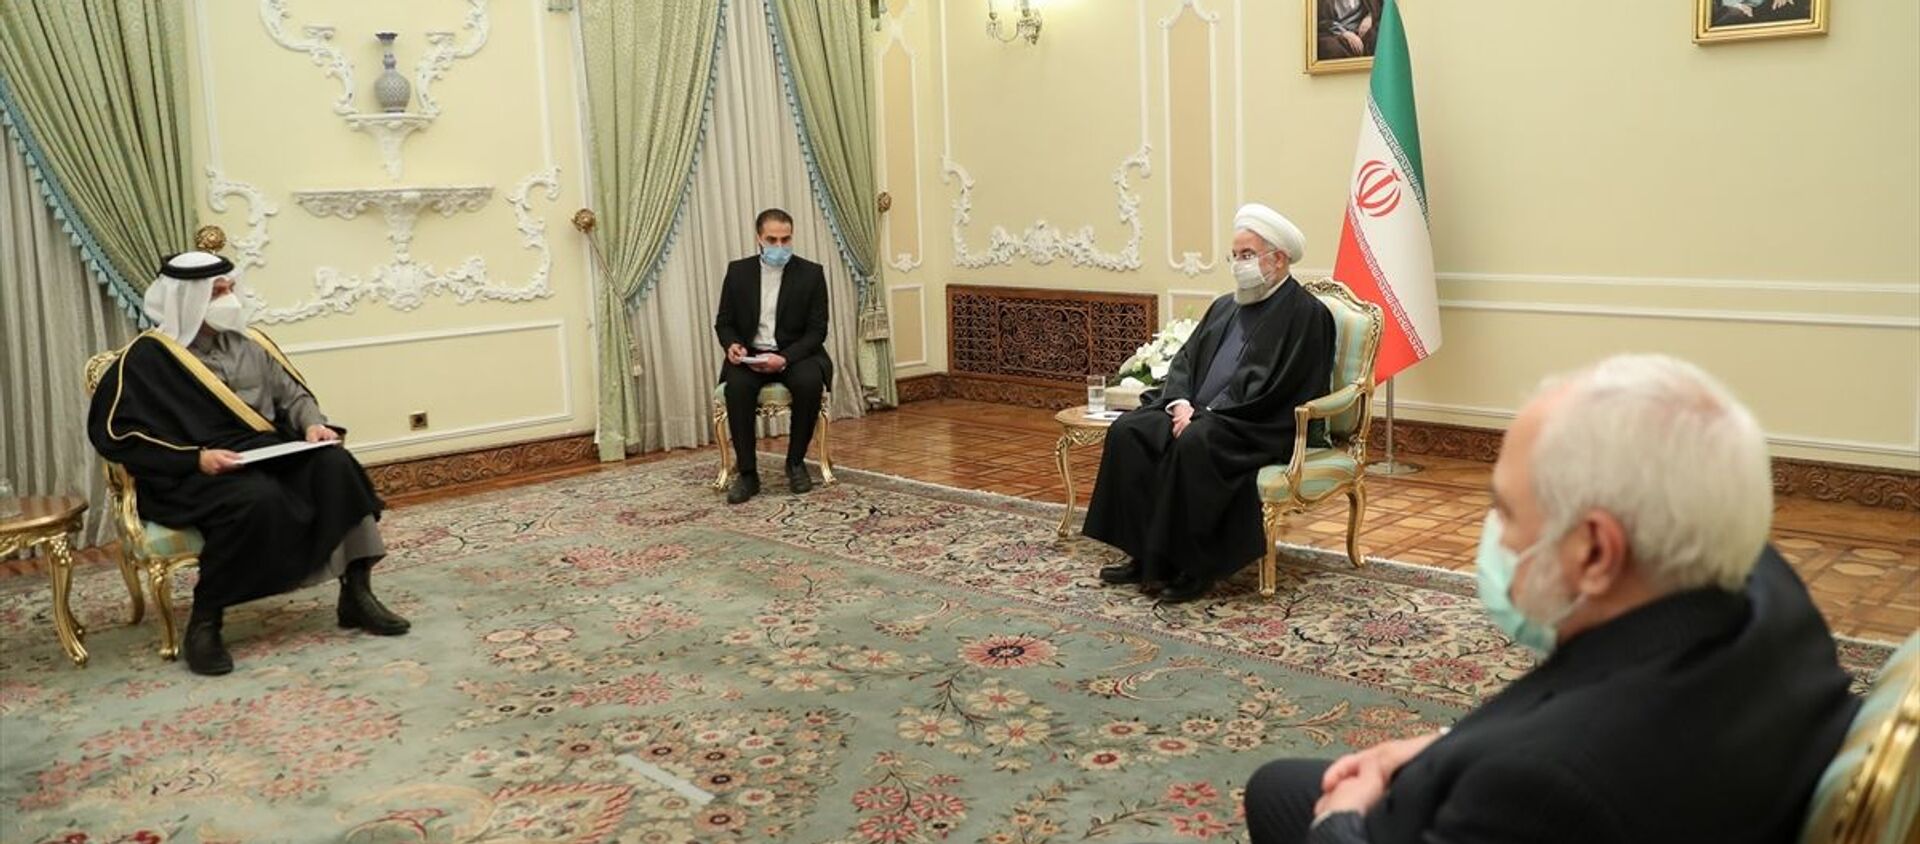 İran Cumhurbaşkanı Hasan Ruhani, (sağda) başkent Tahran'da temaslarda bulunan Katar Dışişleri Bakanı Muhammed bin Abdurrahman Al Sani'yi (solda) kabul etti. - Sputnik Türkiye, 1920, 16.02.2021